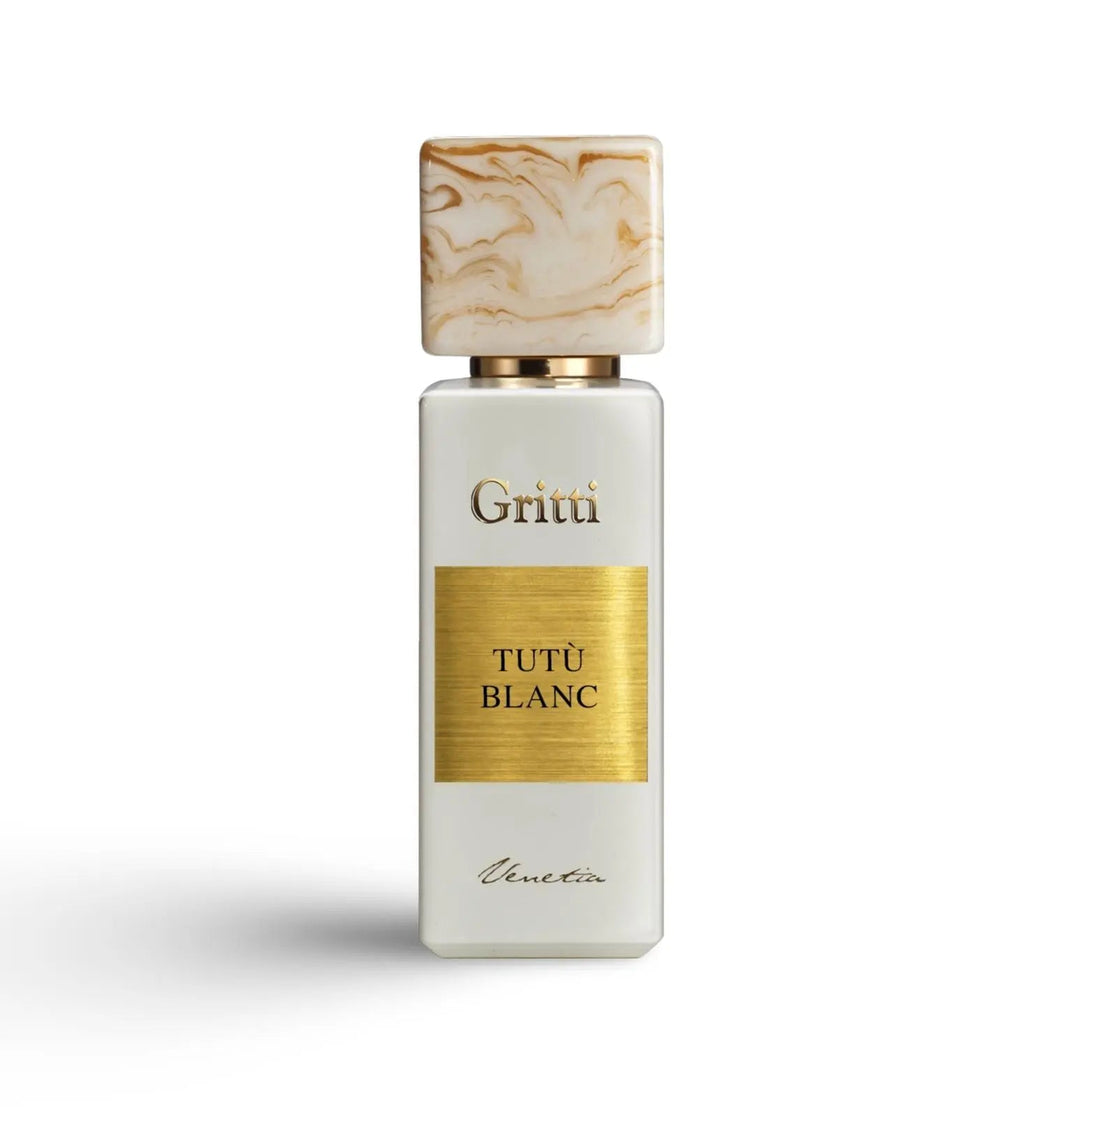 Tutù Blanc Gritti Eau de Parfum 100ml